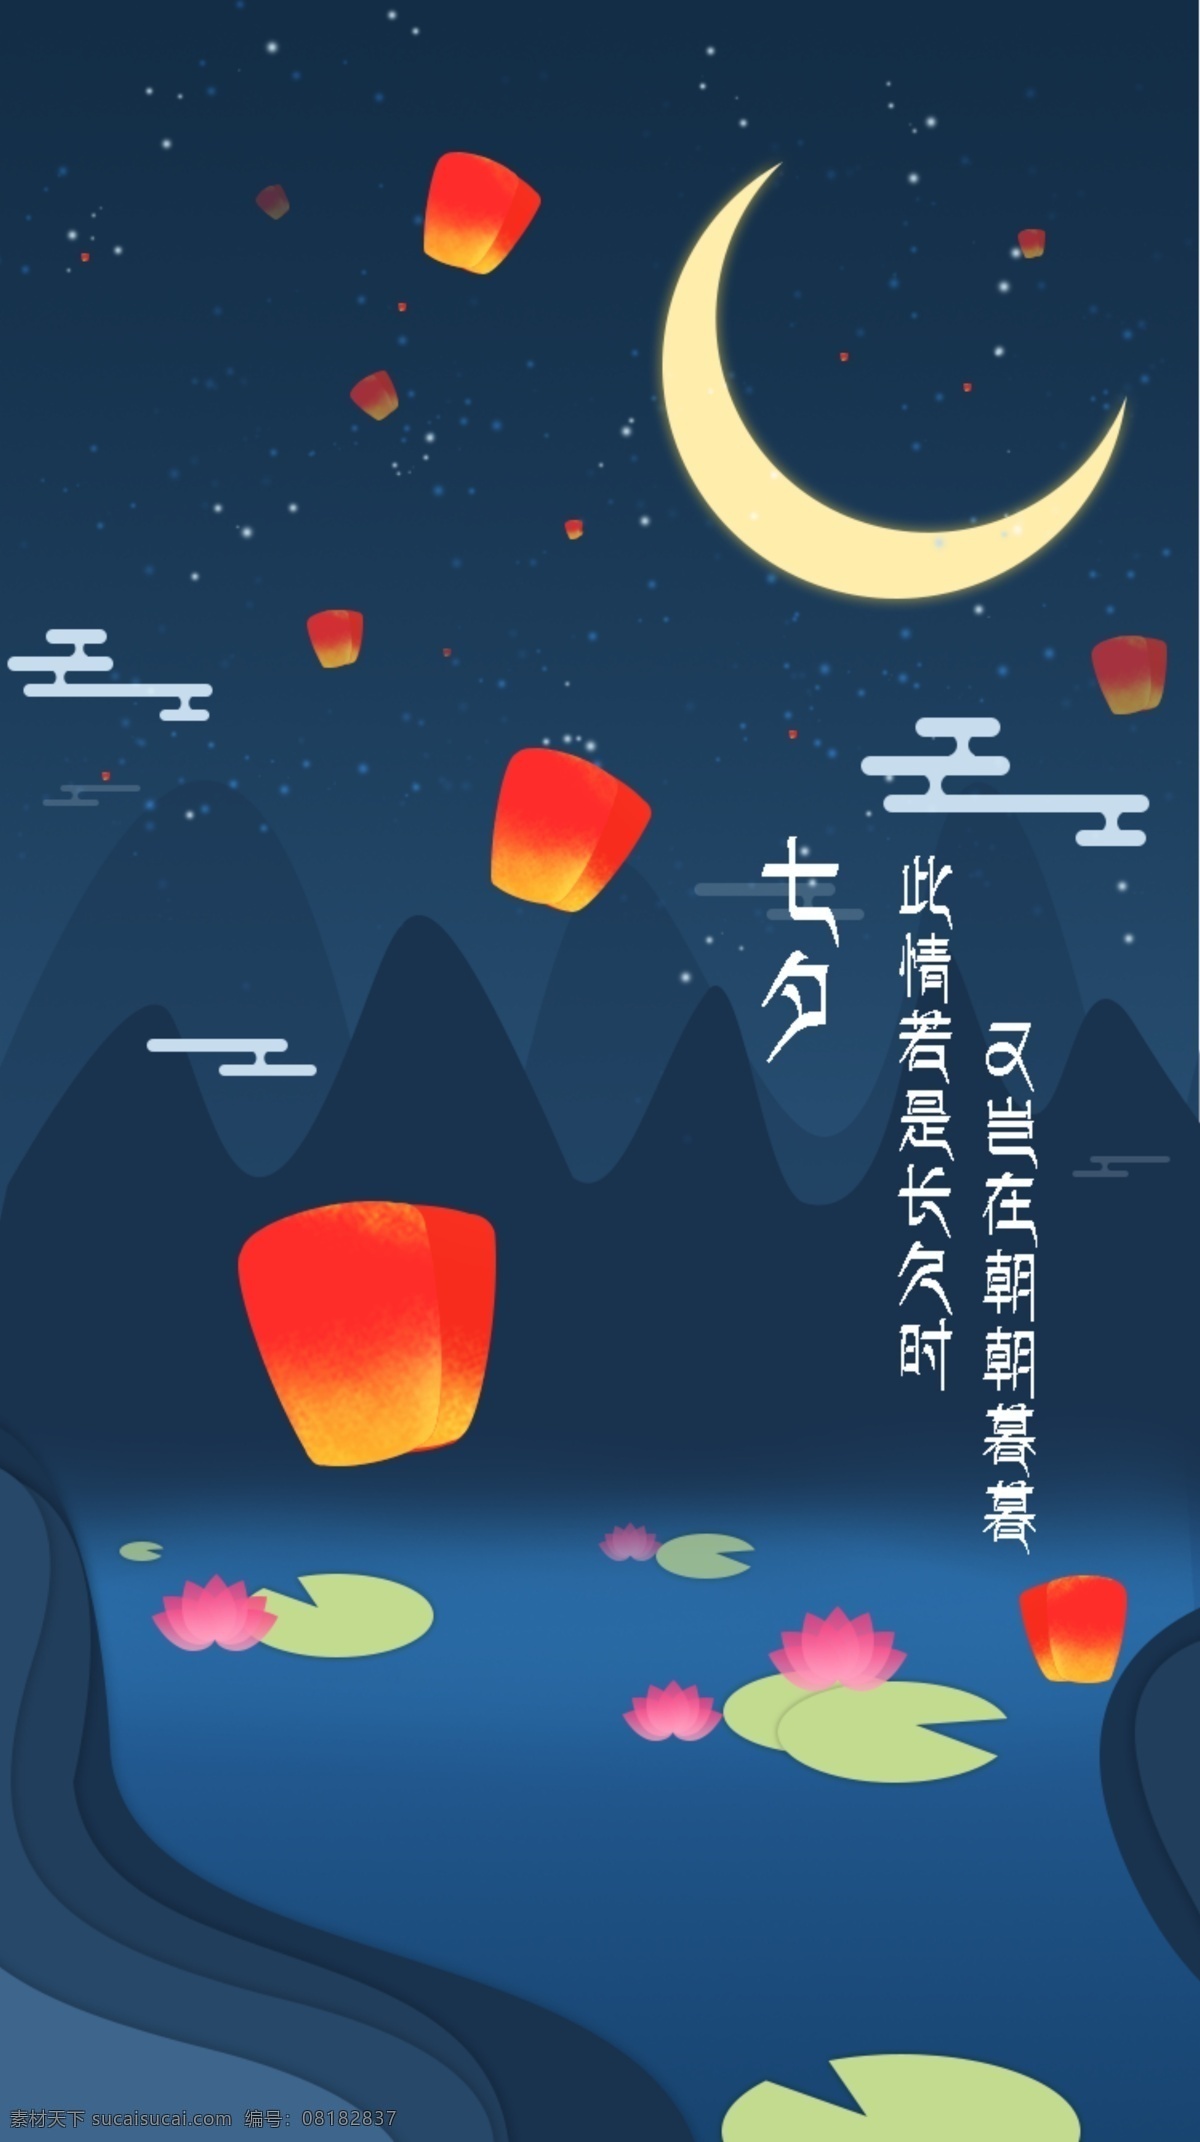 七夕 情人节 网页 ui 节日 ui设计 壁纸 引导页 元素 插画 app 背景